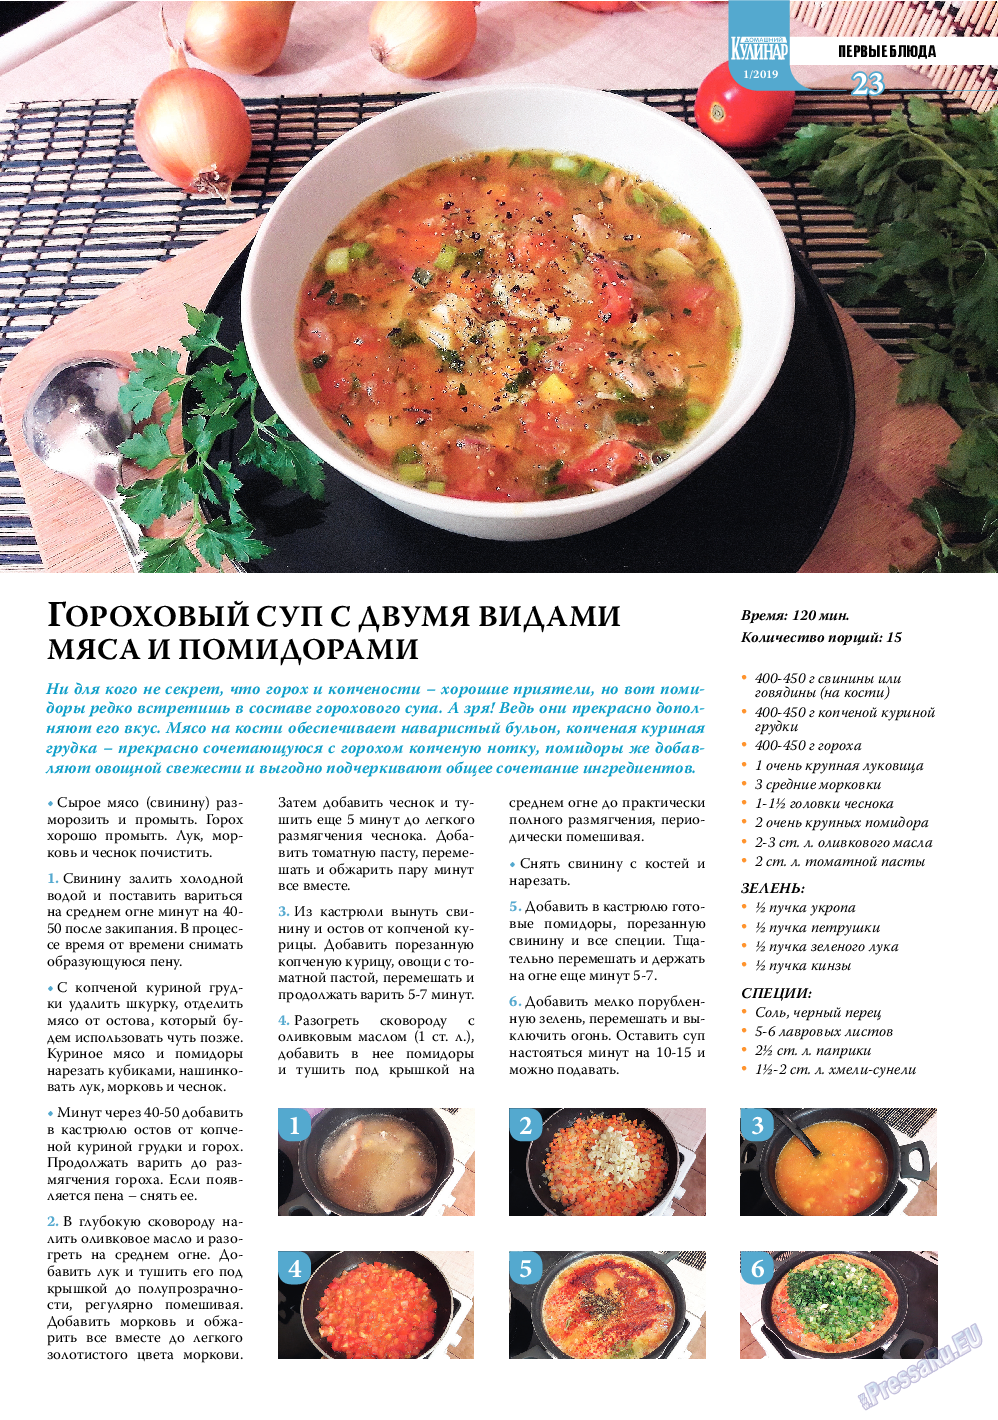 Домашний кулинар, журнал. 2019 №1 стр.23